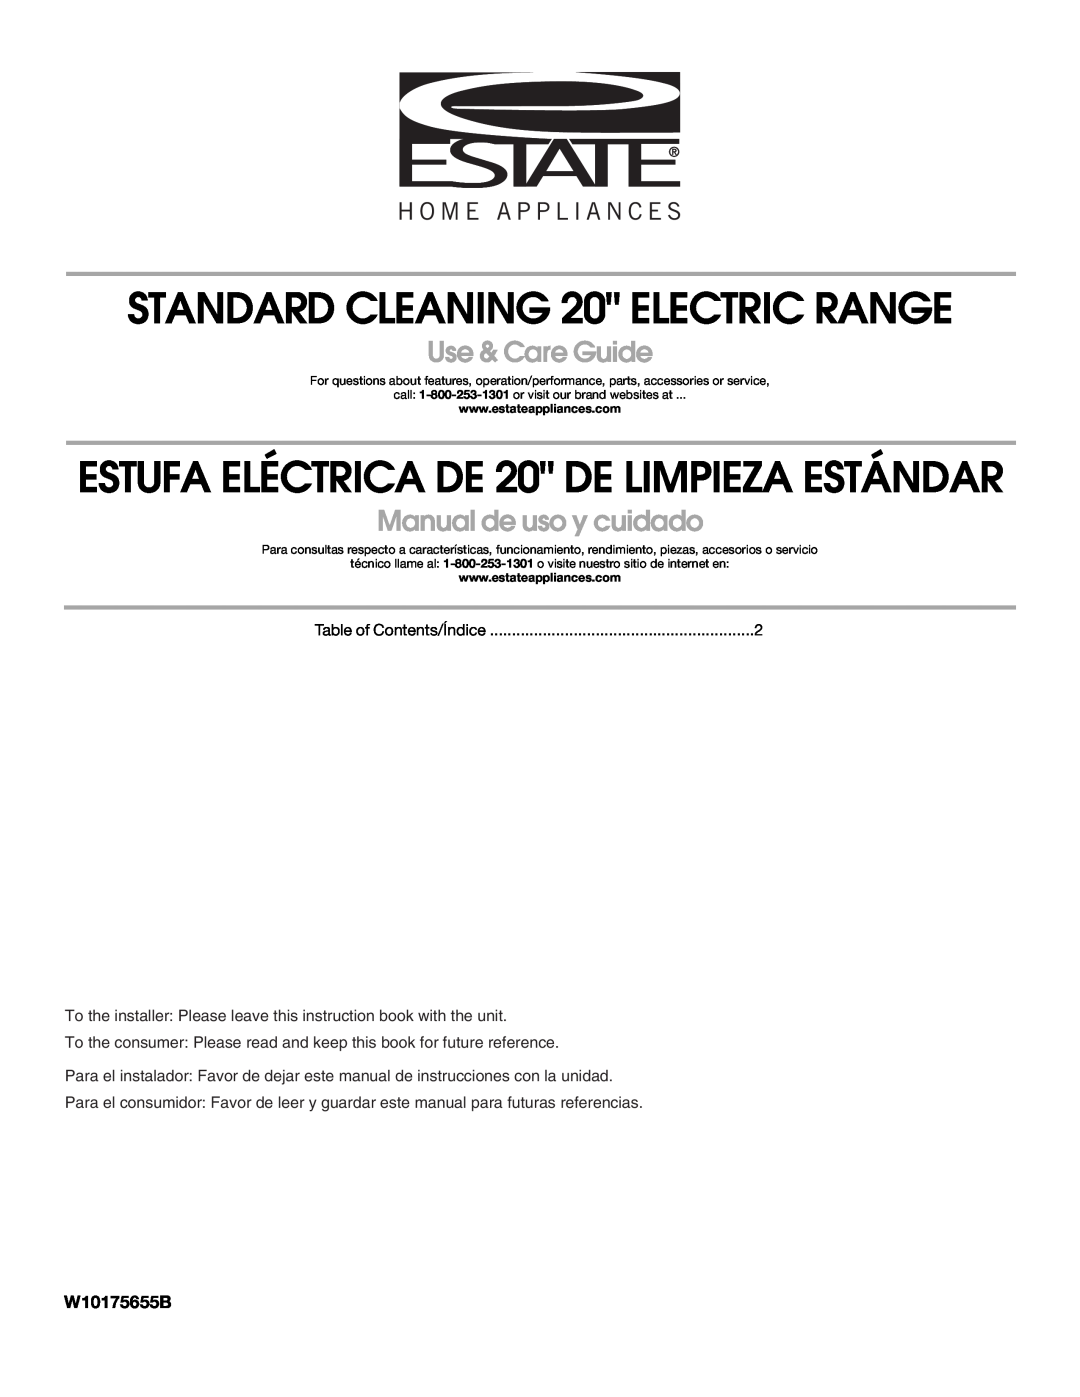 Estate W10175655B manual STANDARD CLEANING 20 ELECTRIC RANGE, ESTUFA ELÉCTRICA DE 20 DE LIMPIEZA ESTÁNDAR 